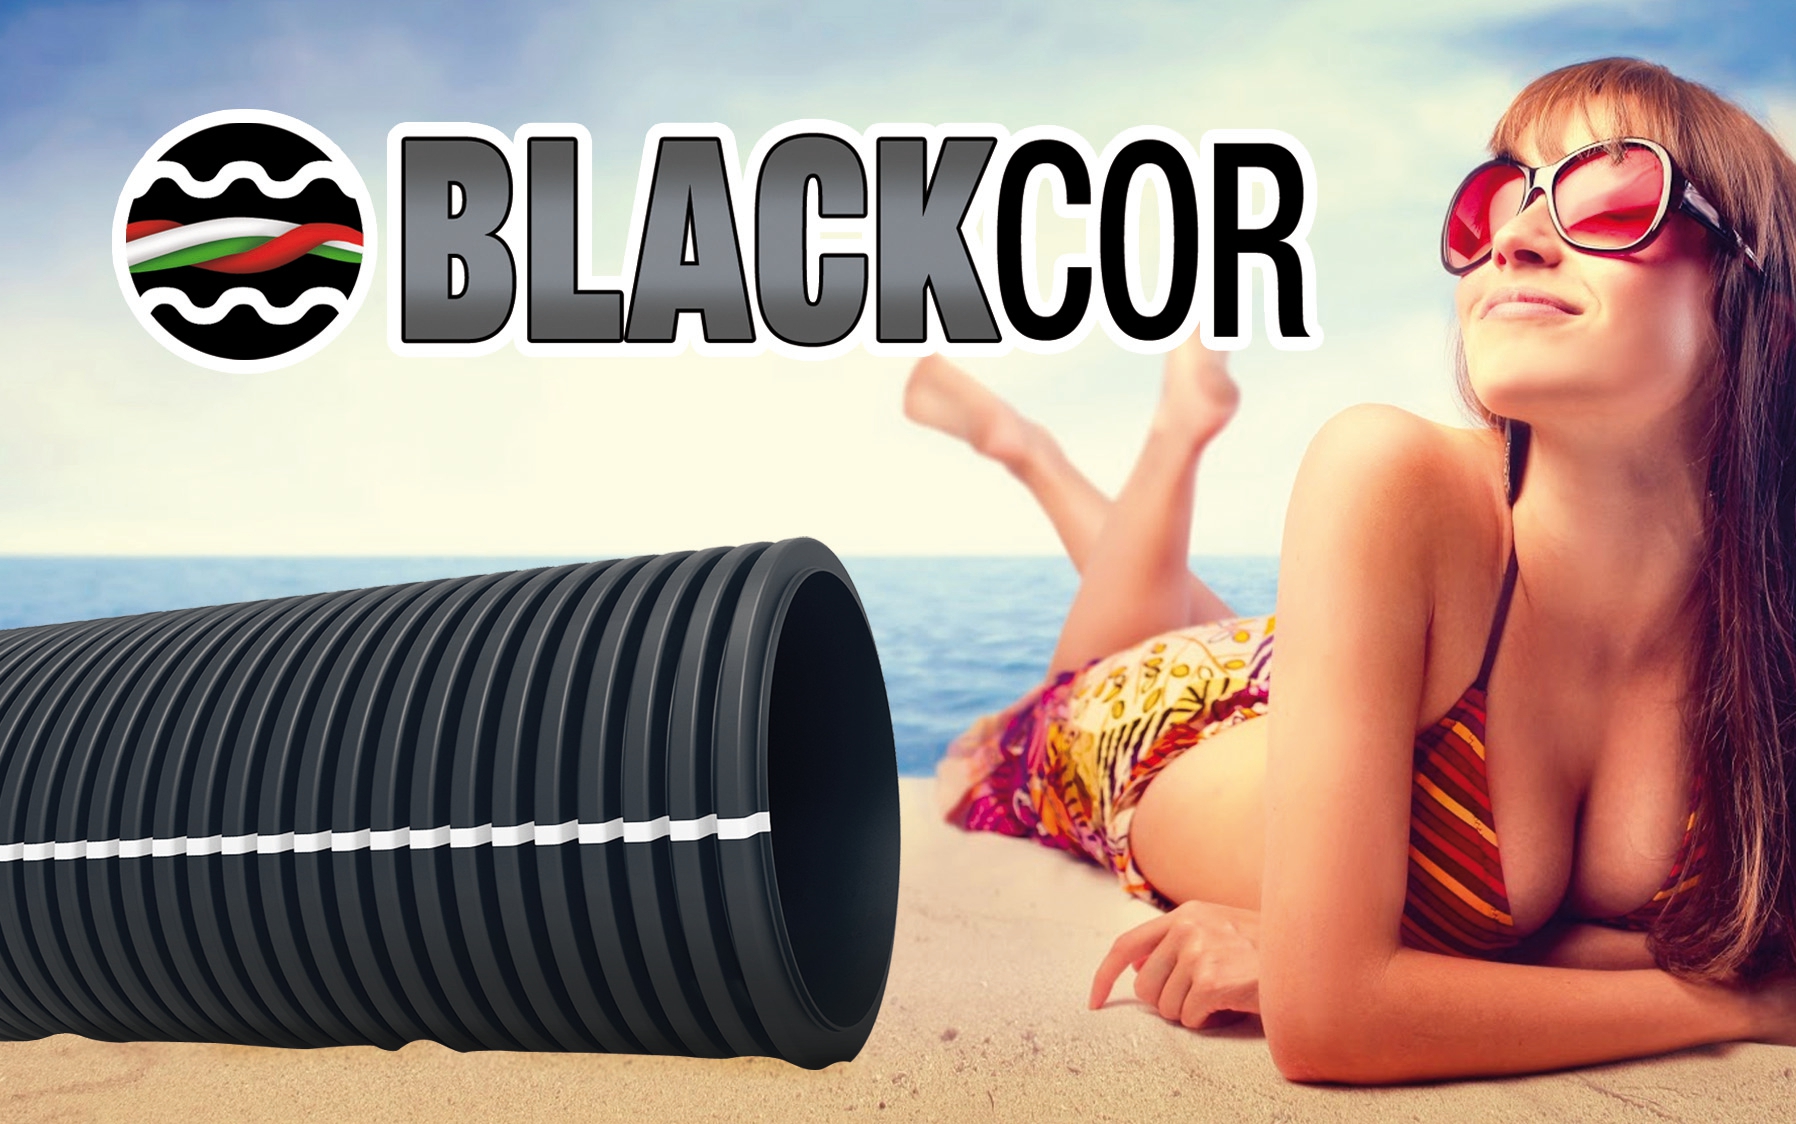 Blackcor, il nuovo tubo corrugato doppia parete, unico ed innovativo